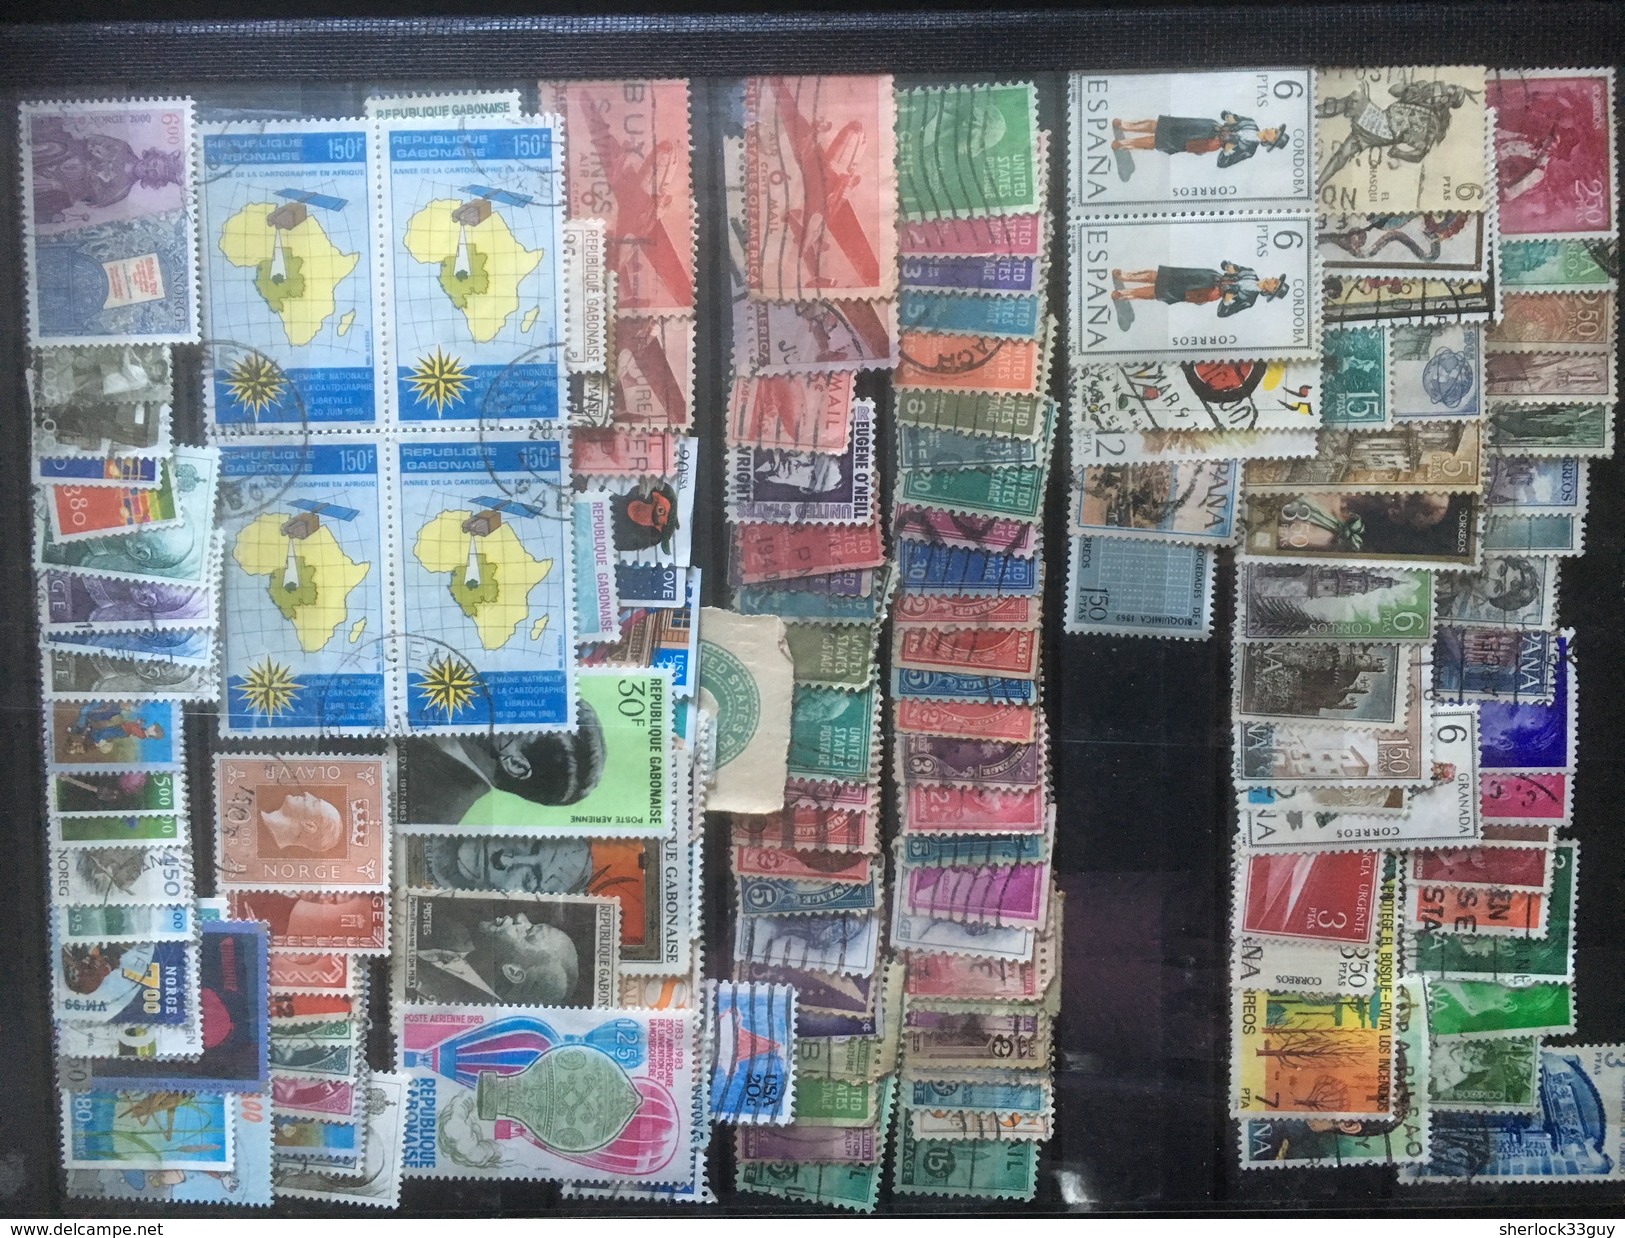 DIVERS MONDE + FRANCE. Plus de 2000 timbres différents. DEPART 15 EUROS